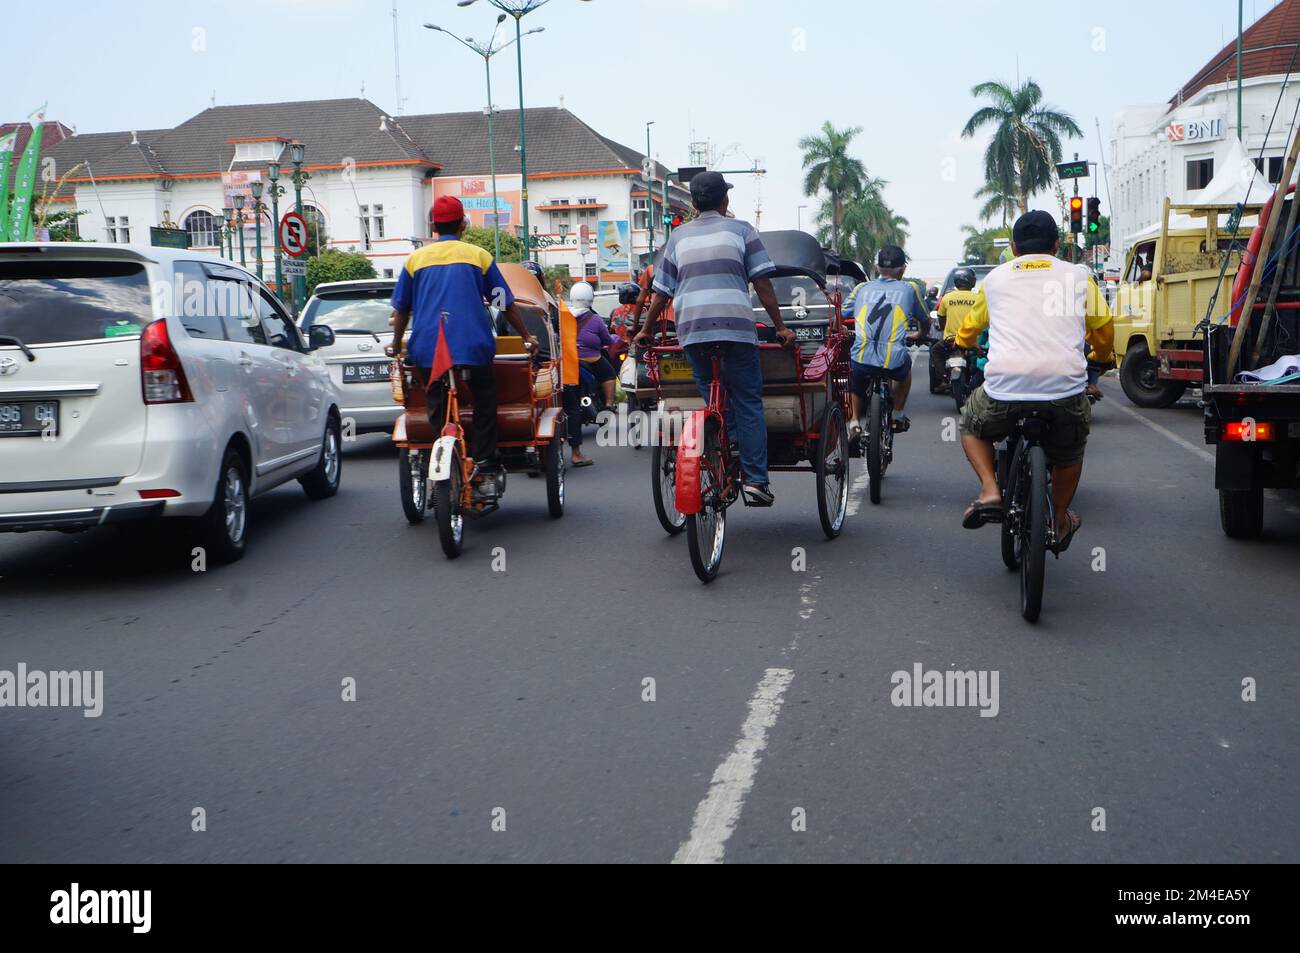 Eine Gruppe von Radfahrern, Rikschas, die am 2017. Mai zwischen Autos auf der Straße von Yogyakarta, Indonesien, unterwegs sind Stockfoto